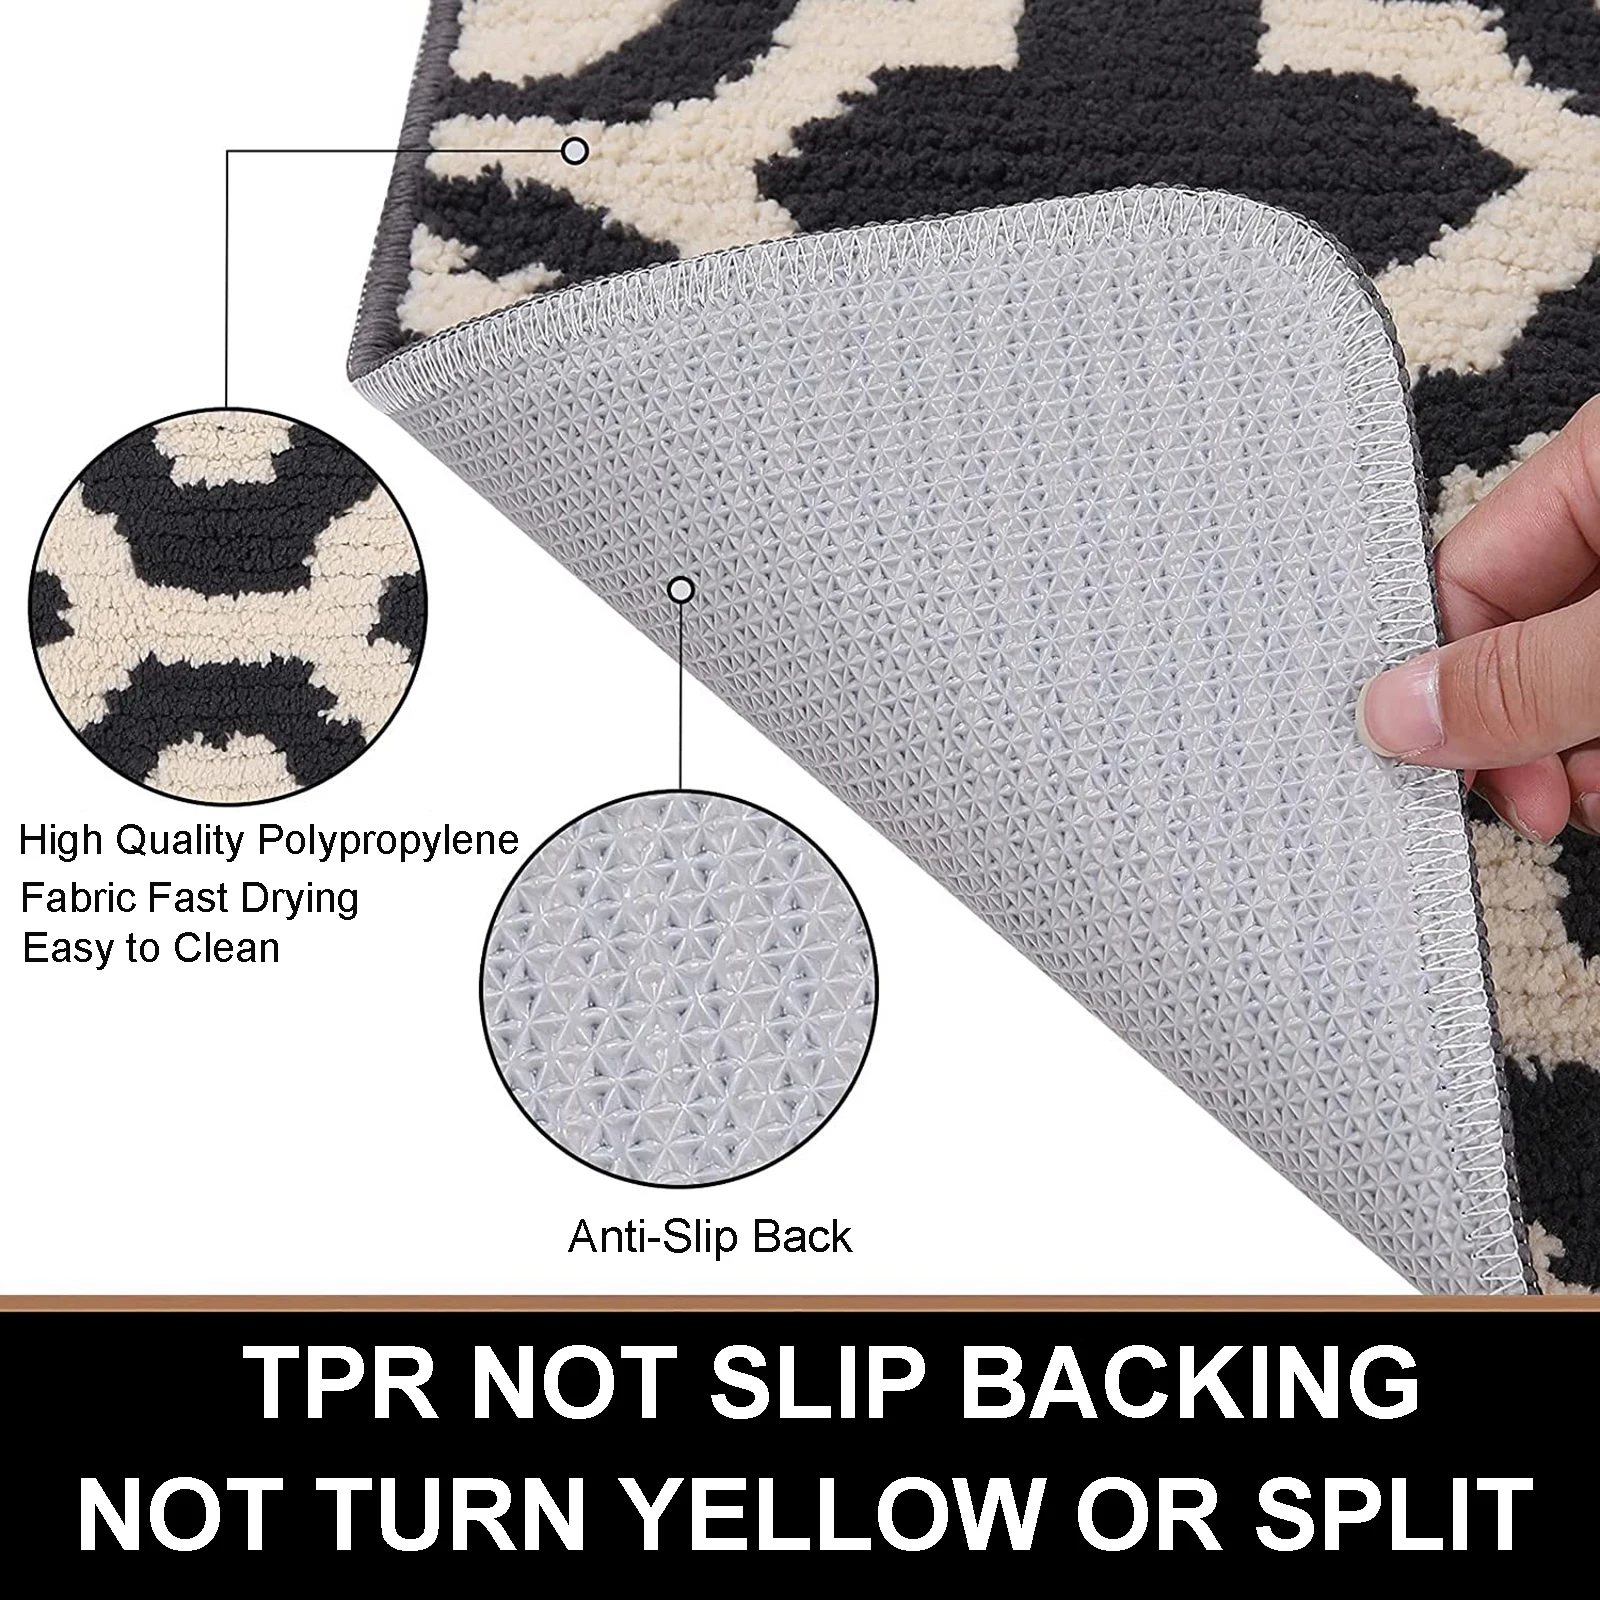 Gorilla Grip  Area Rug Pad For Carpet